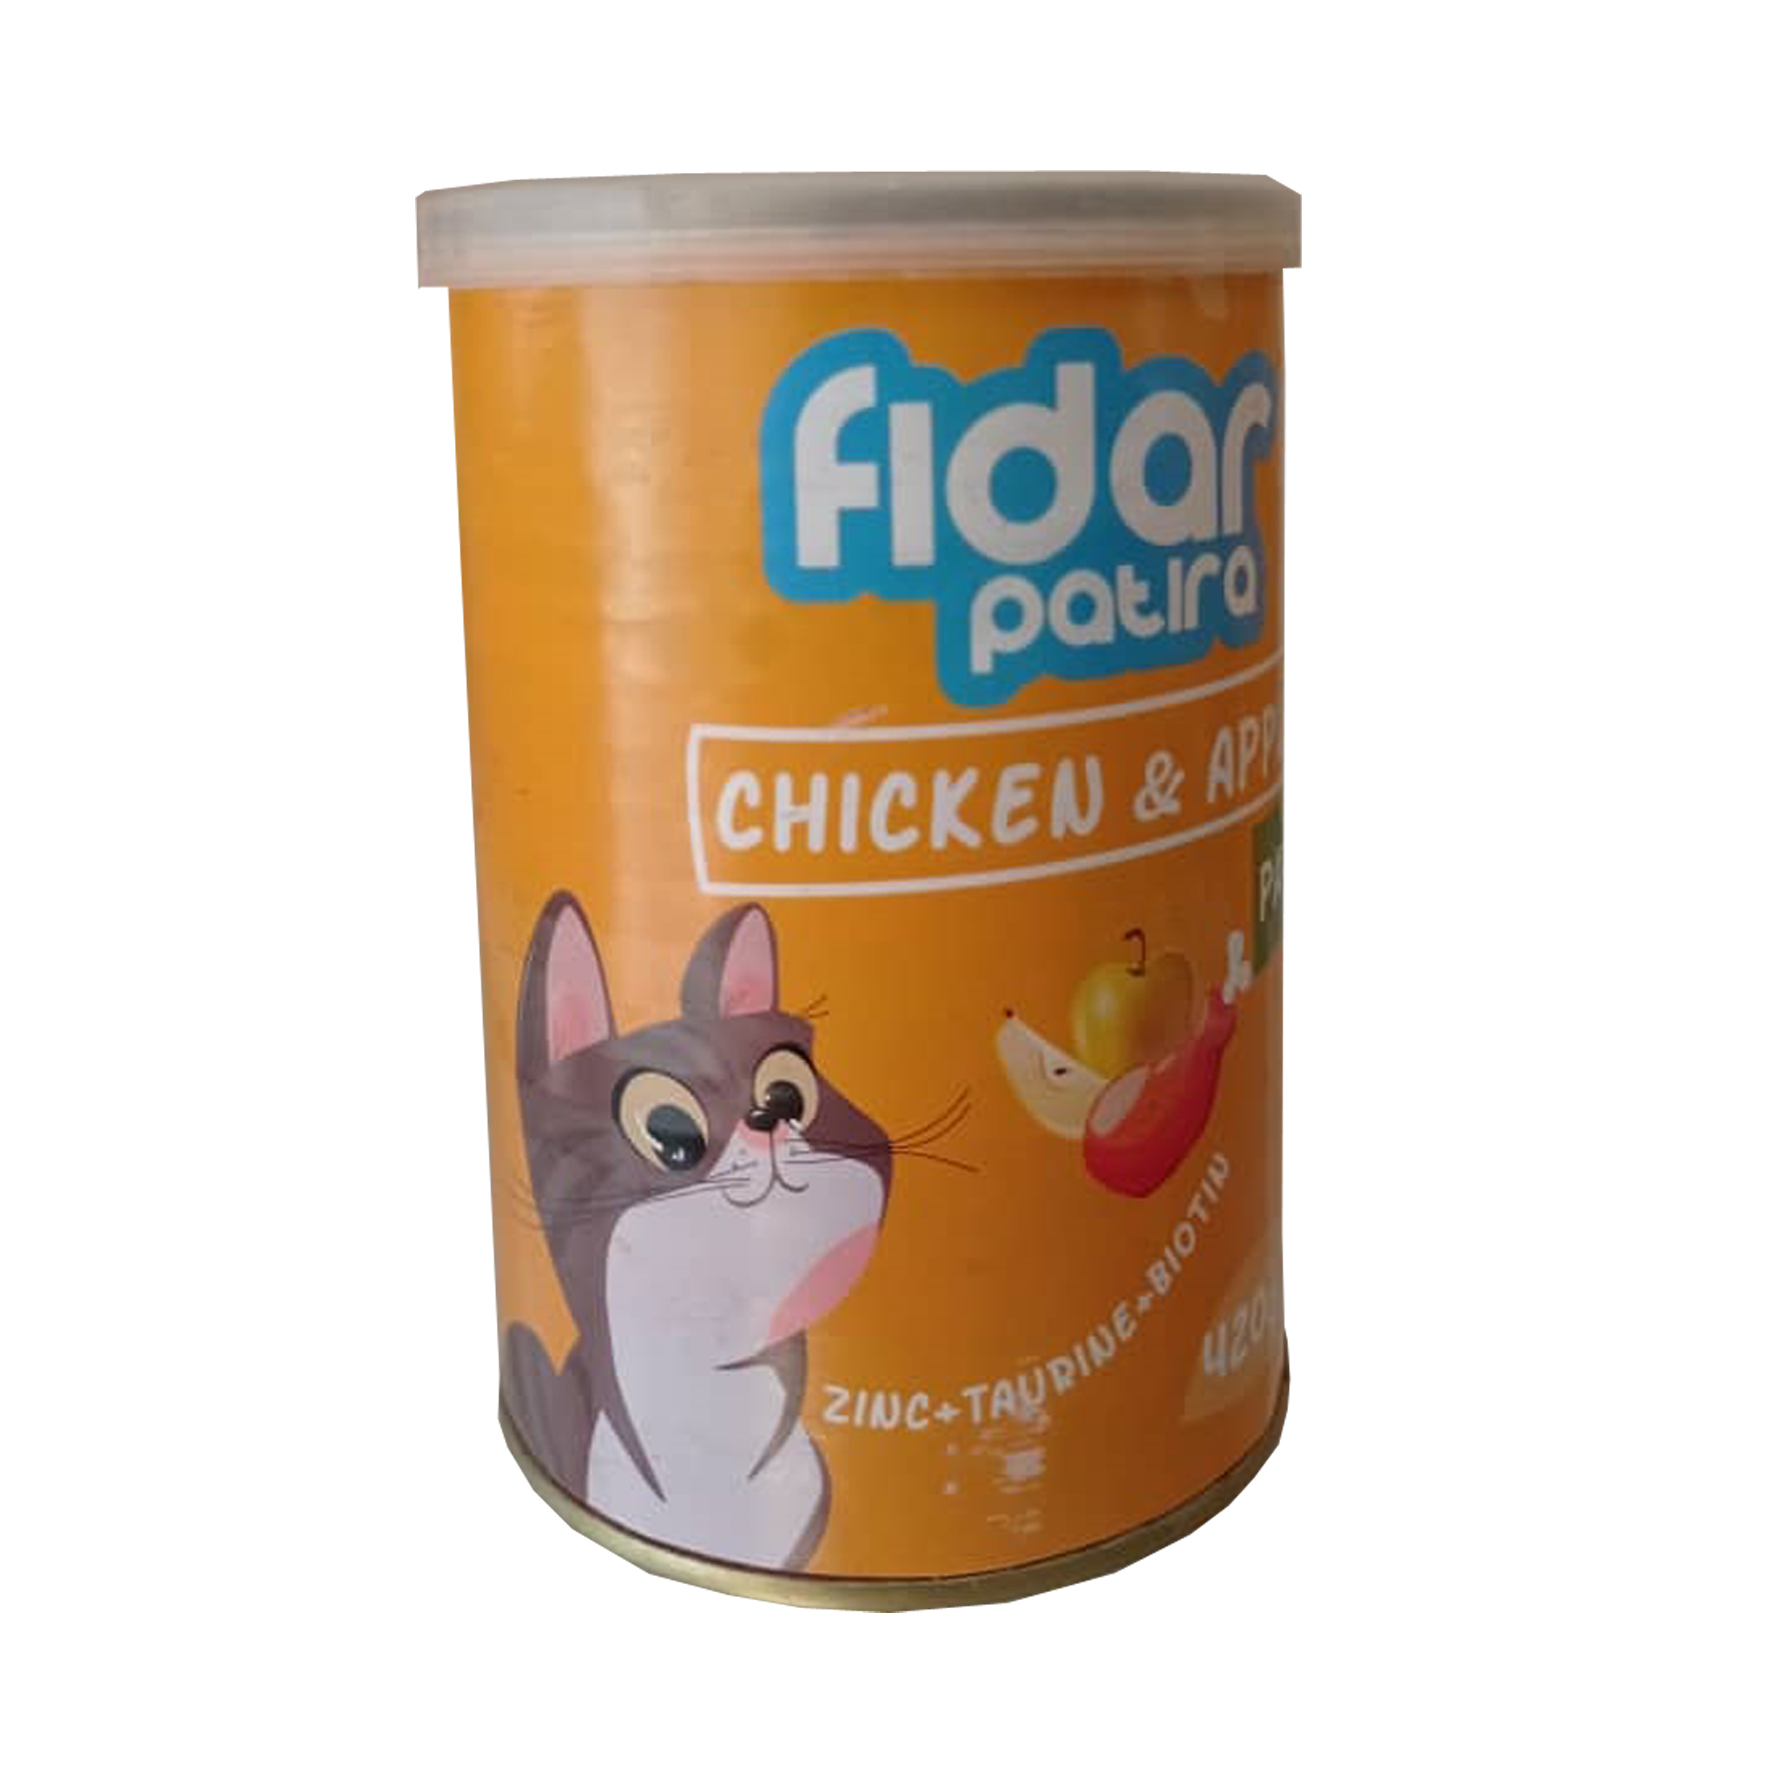 کنسرو غذای گربه فیدار پاتیرا مدل مرغ و سیب وزن 420 گرم